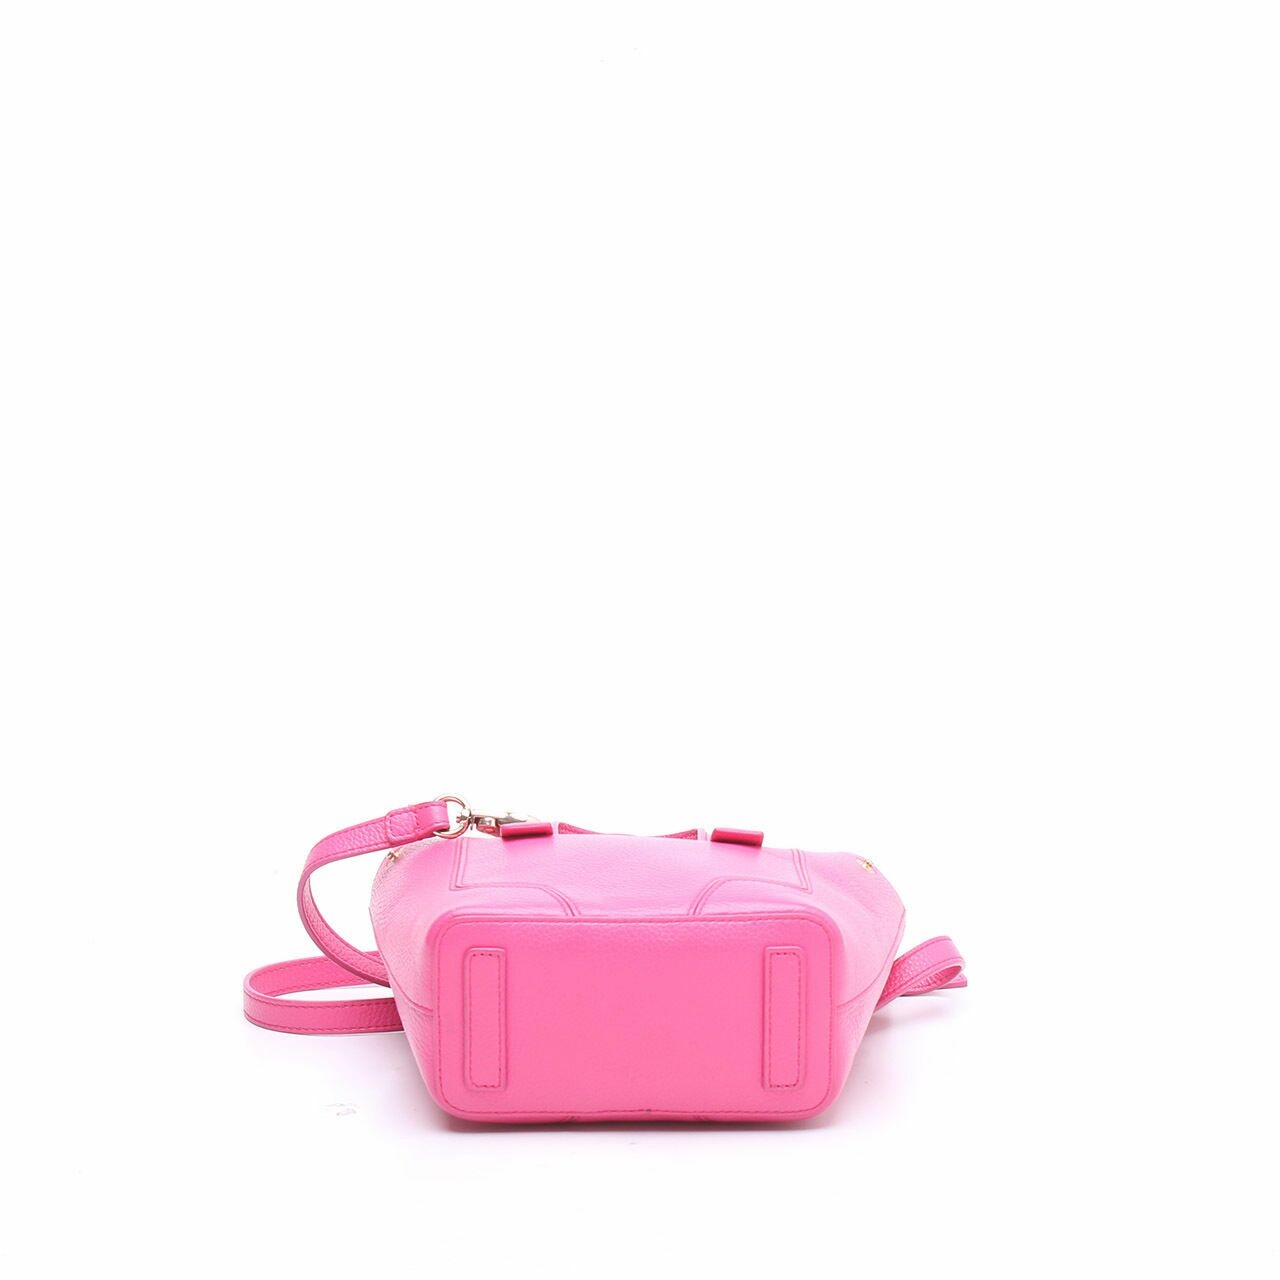 Furla Pink Leather Satchel Bag